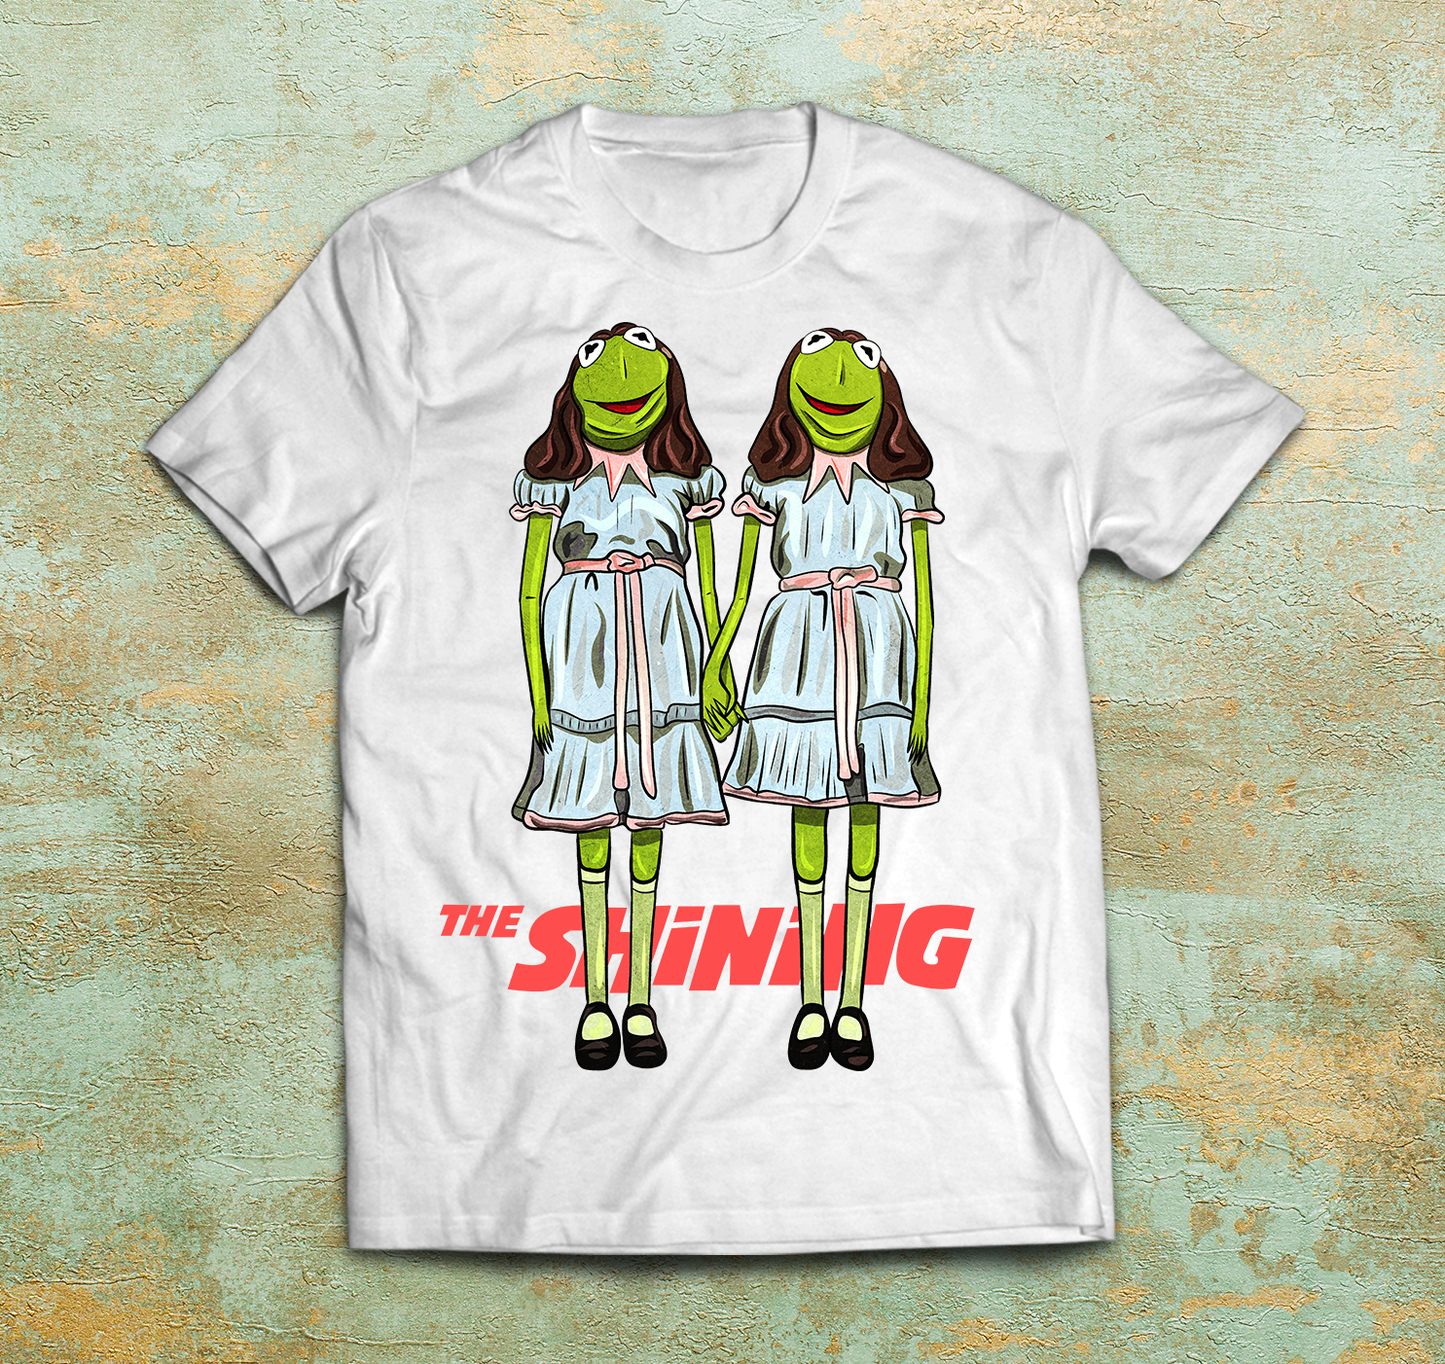 The Shining Twins - Muppets Parody Shirt